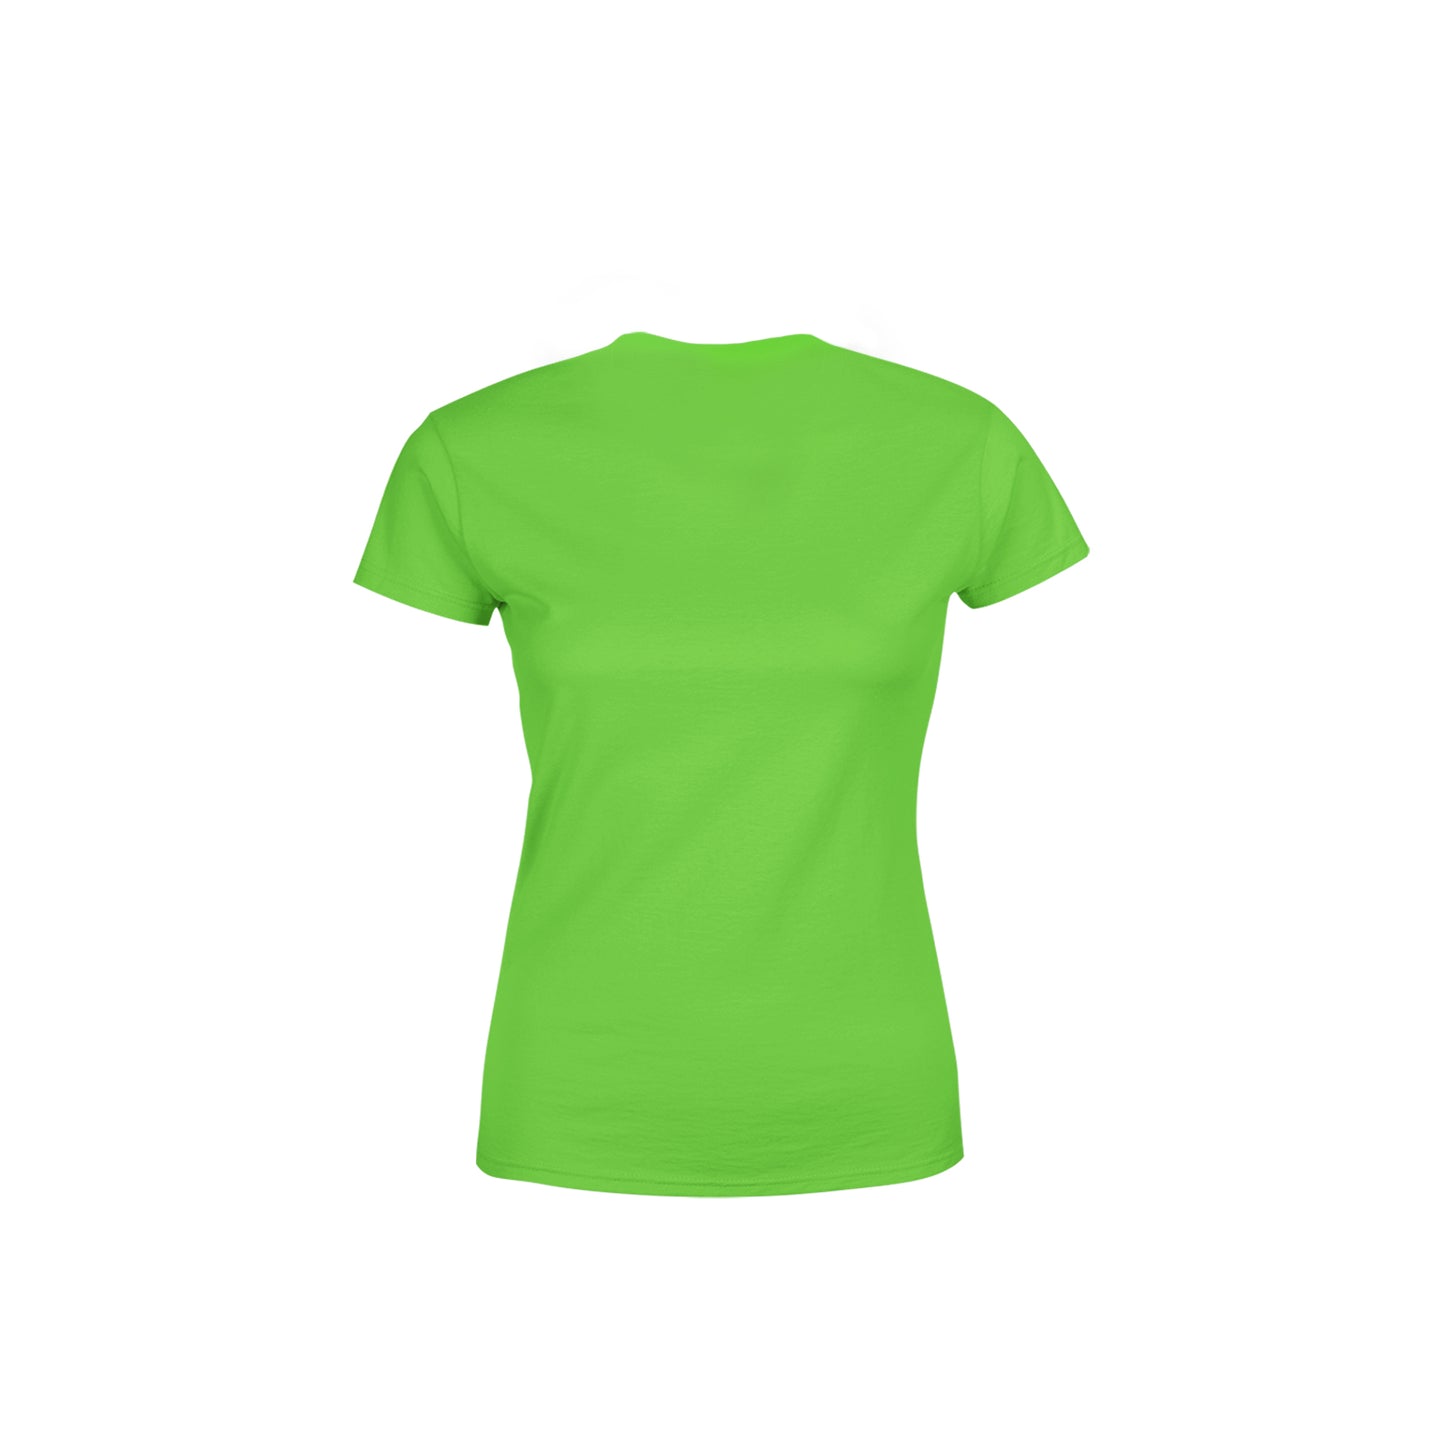 92 Number Women's T-Shirt (Liril Green)